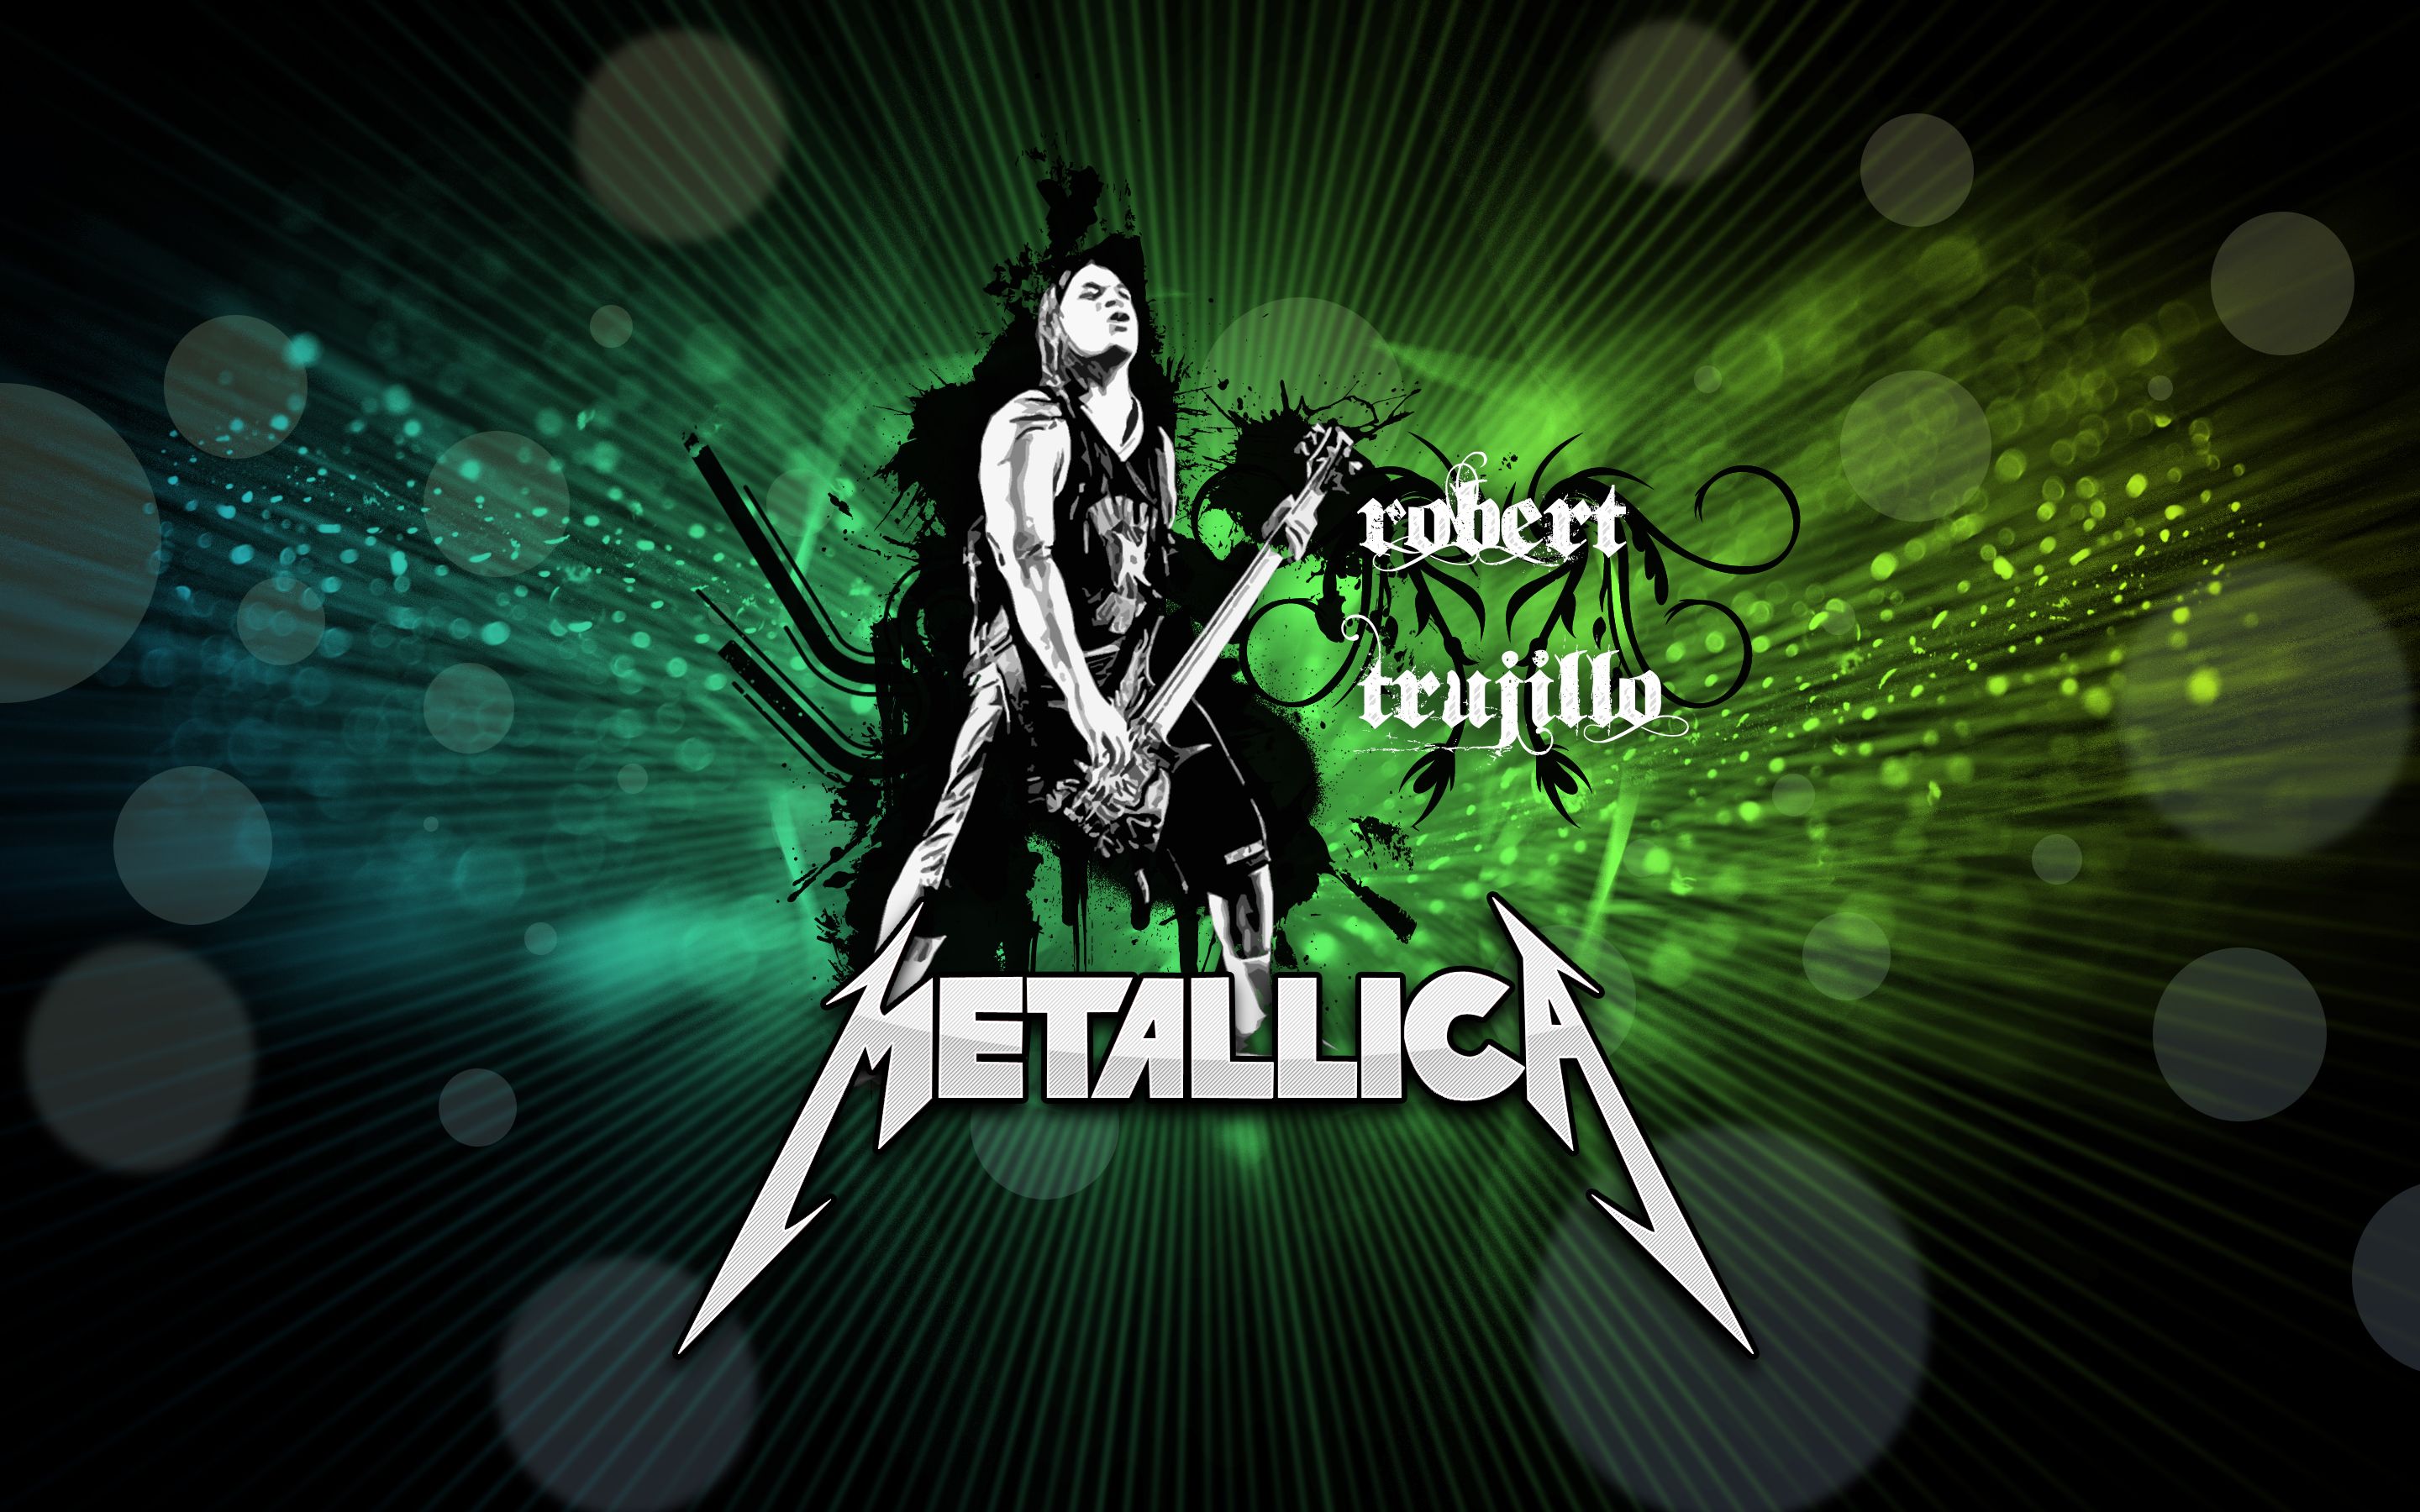 Amazing Rock Wallpapers - Metallica 16 9 - 2880x1800 Wallpaper 